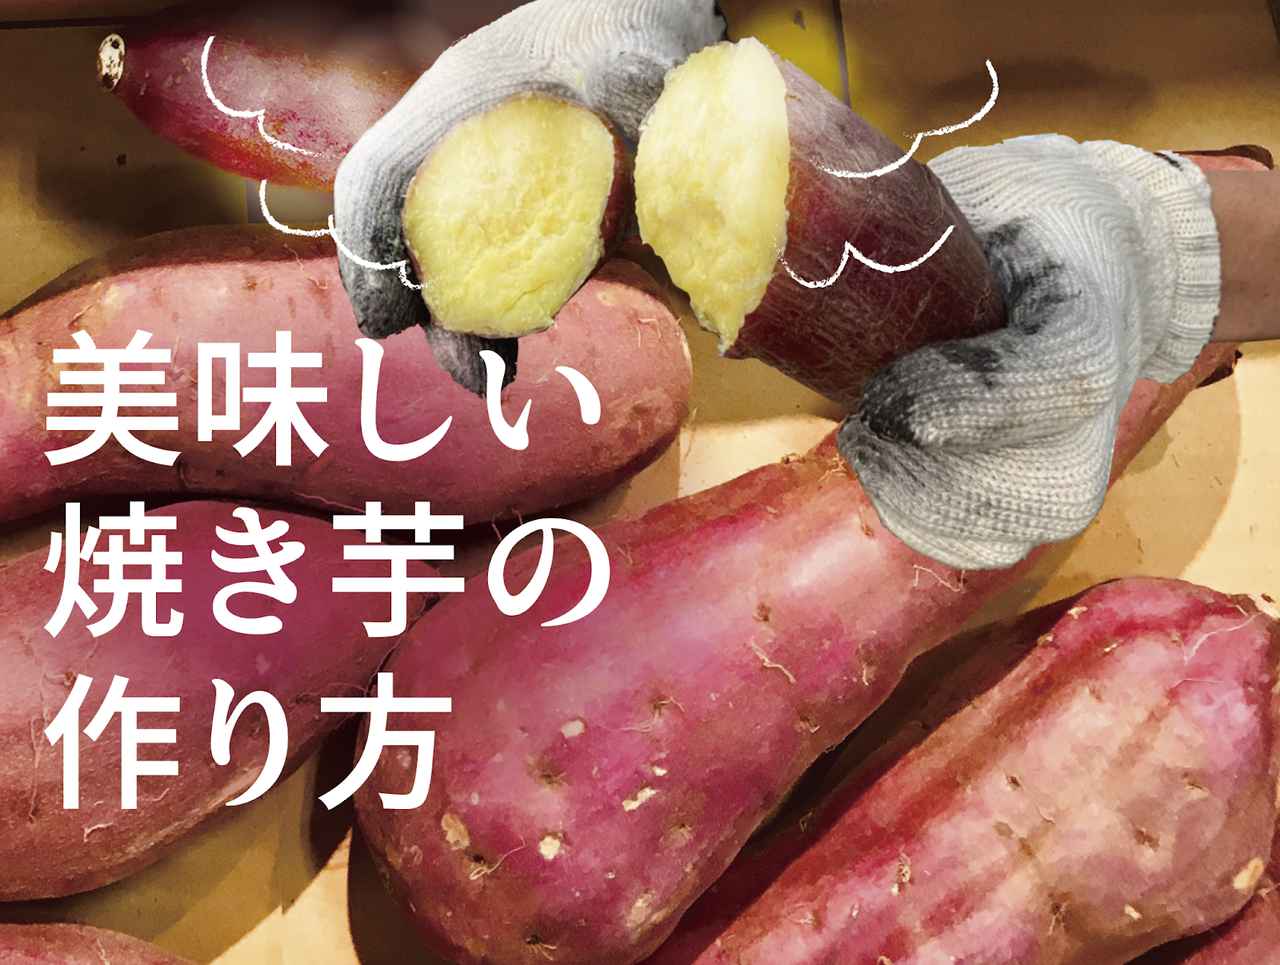 キャンプで焼き芋 焚き火で美味しい作り方 さつまいもの種類ごとの特徴解説 お役立ちキャンプ情報 年11月13日 日本気象協会 Tenki Jp